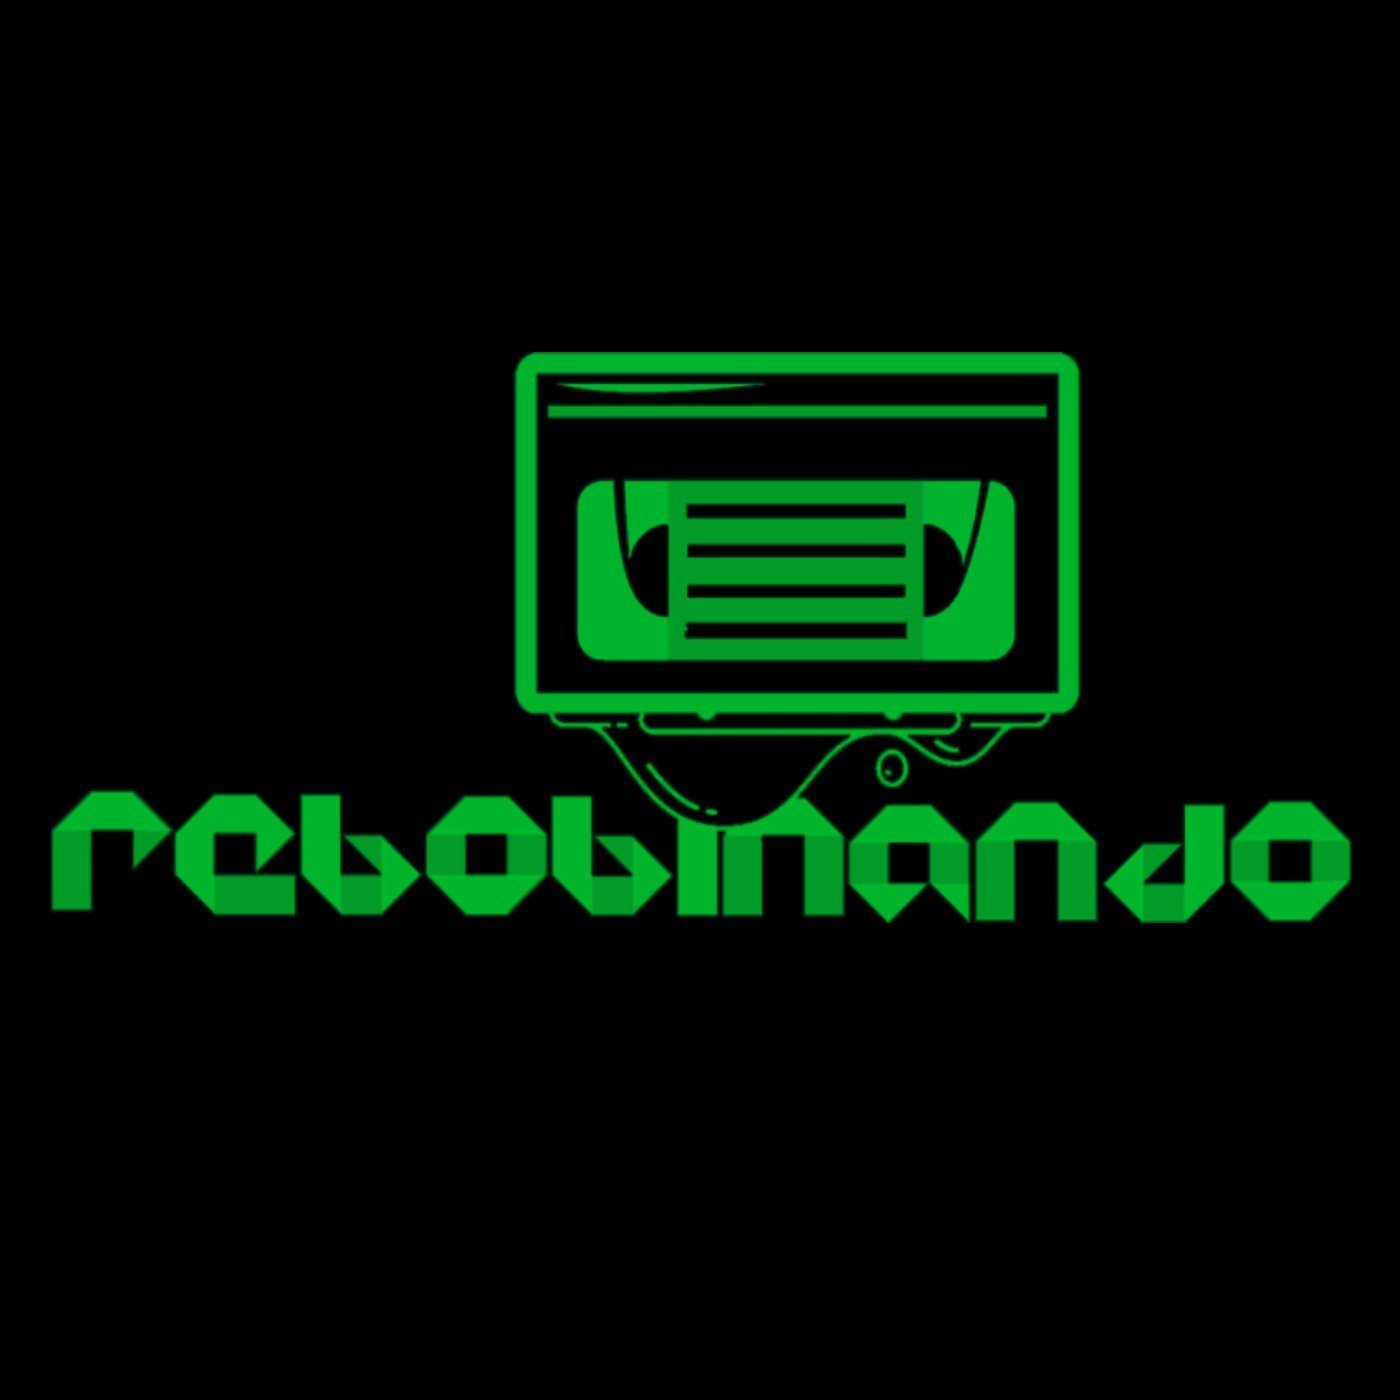 Logotipo do podcast Rebobinando